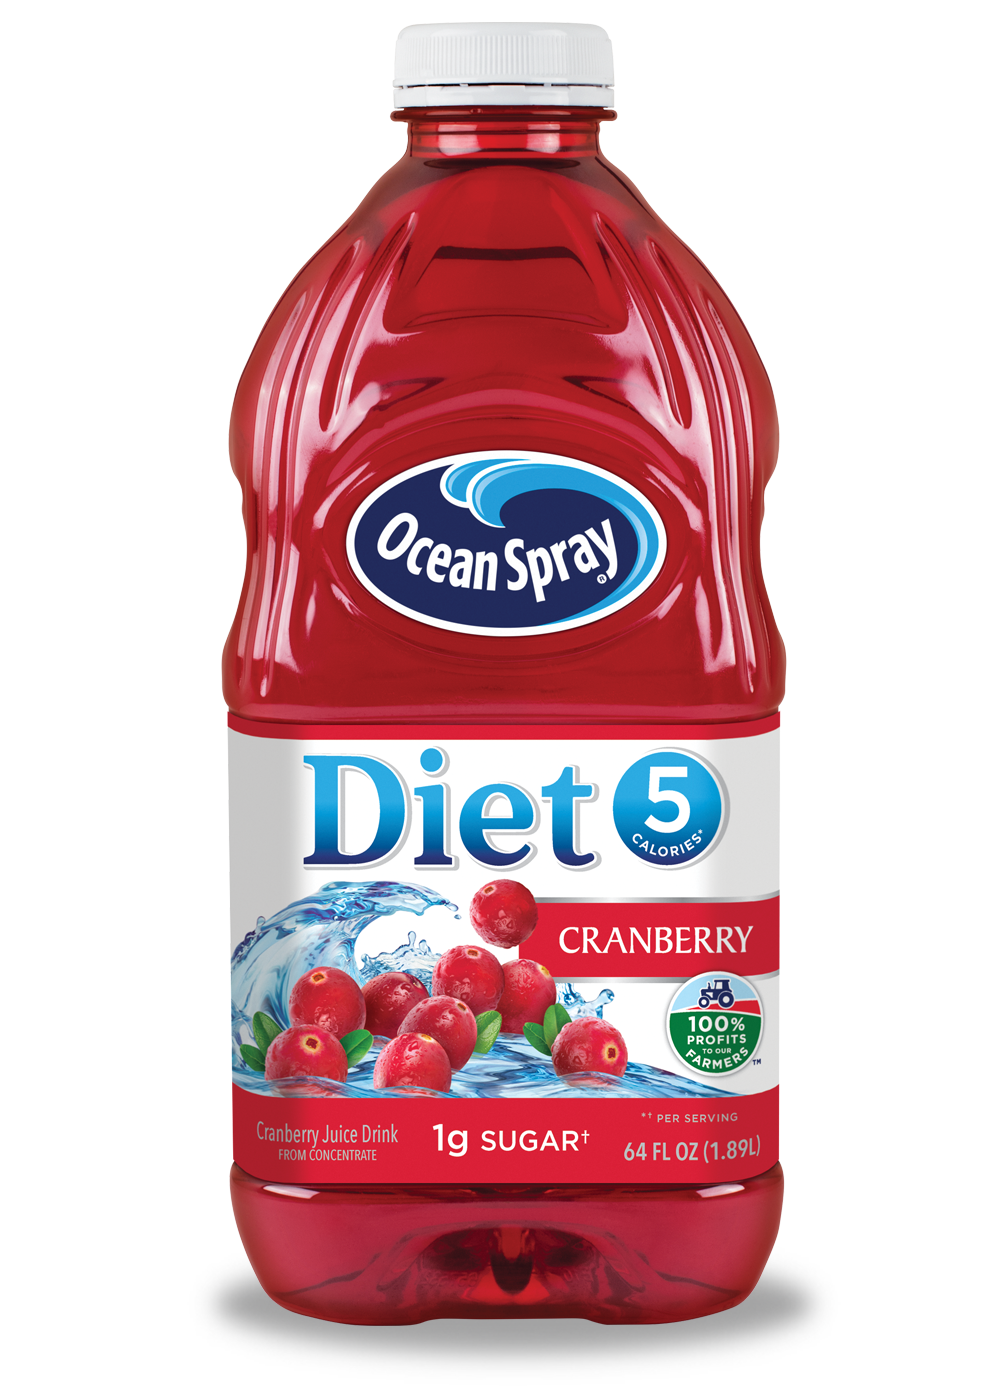 no sugar diet Ocean Spray cranberry juice